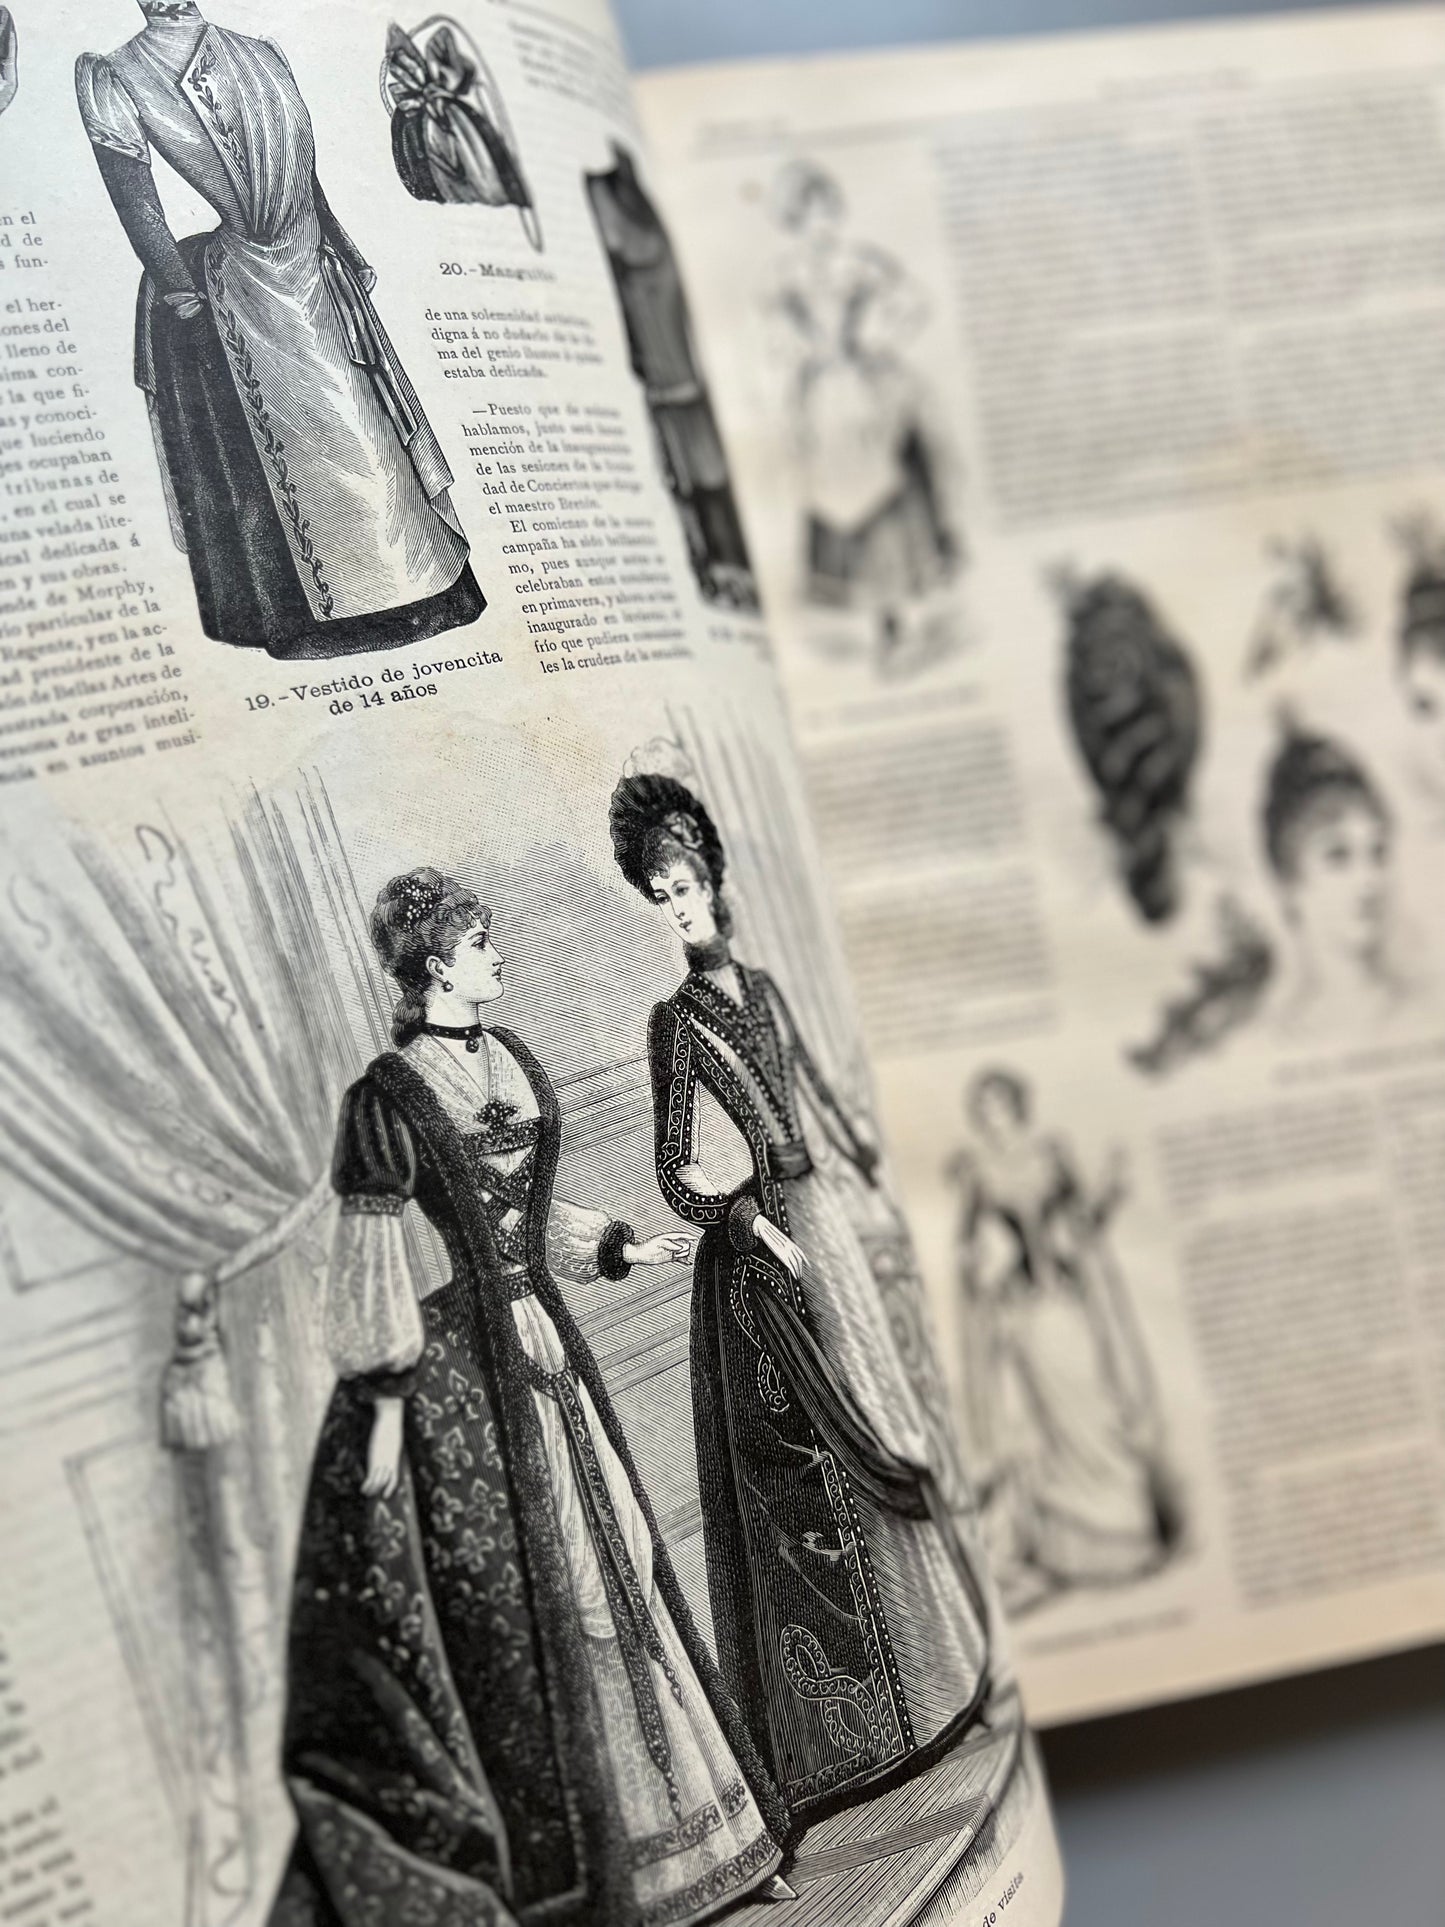 El Salon de la Moda, revista encuadernada - 1 de enero de 1889 al 16 de julio de 1890